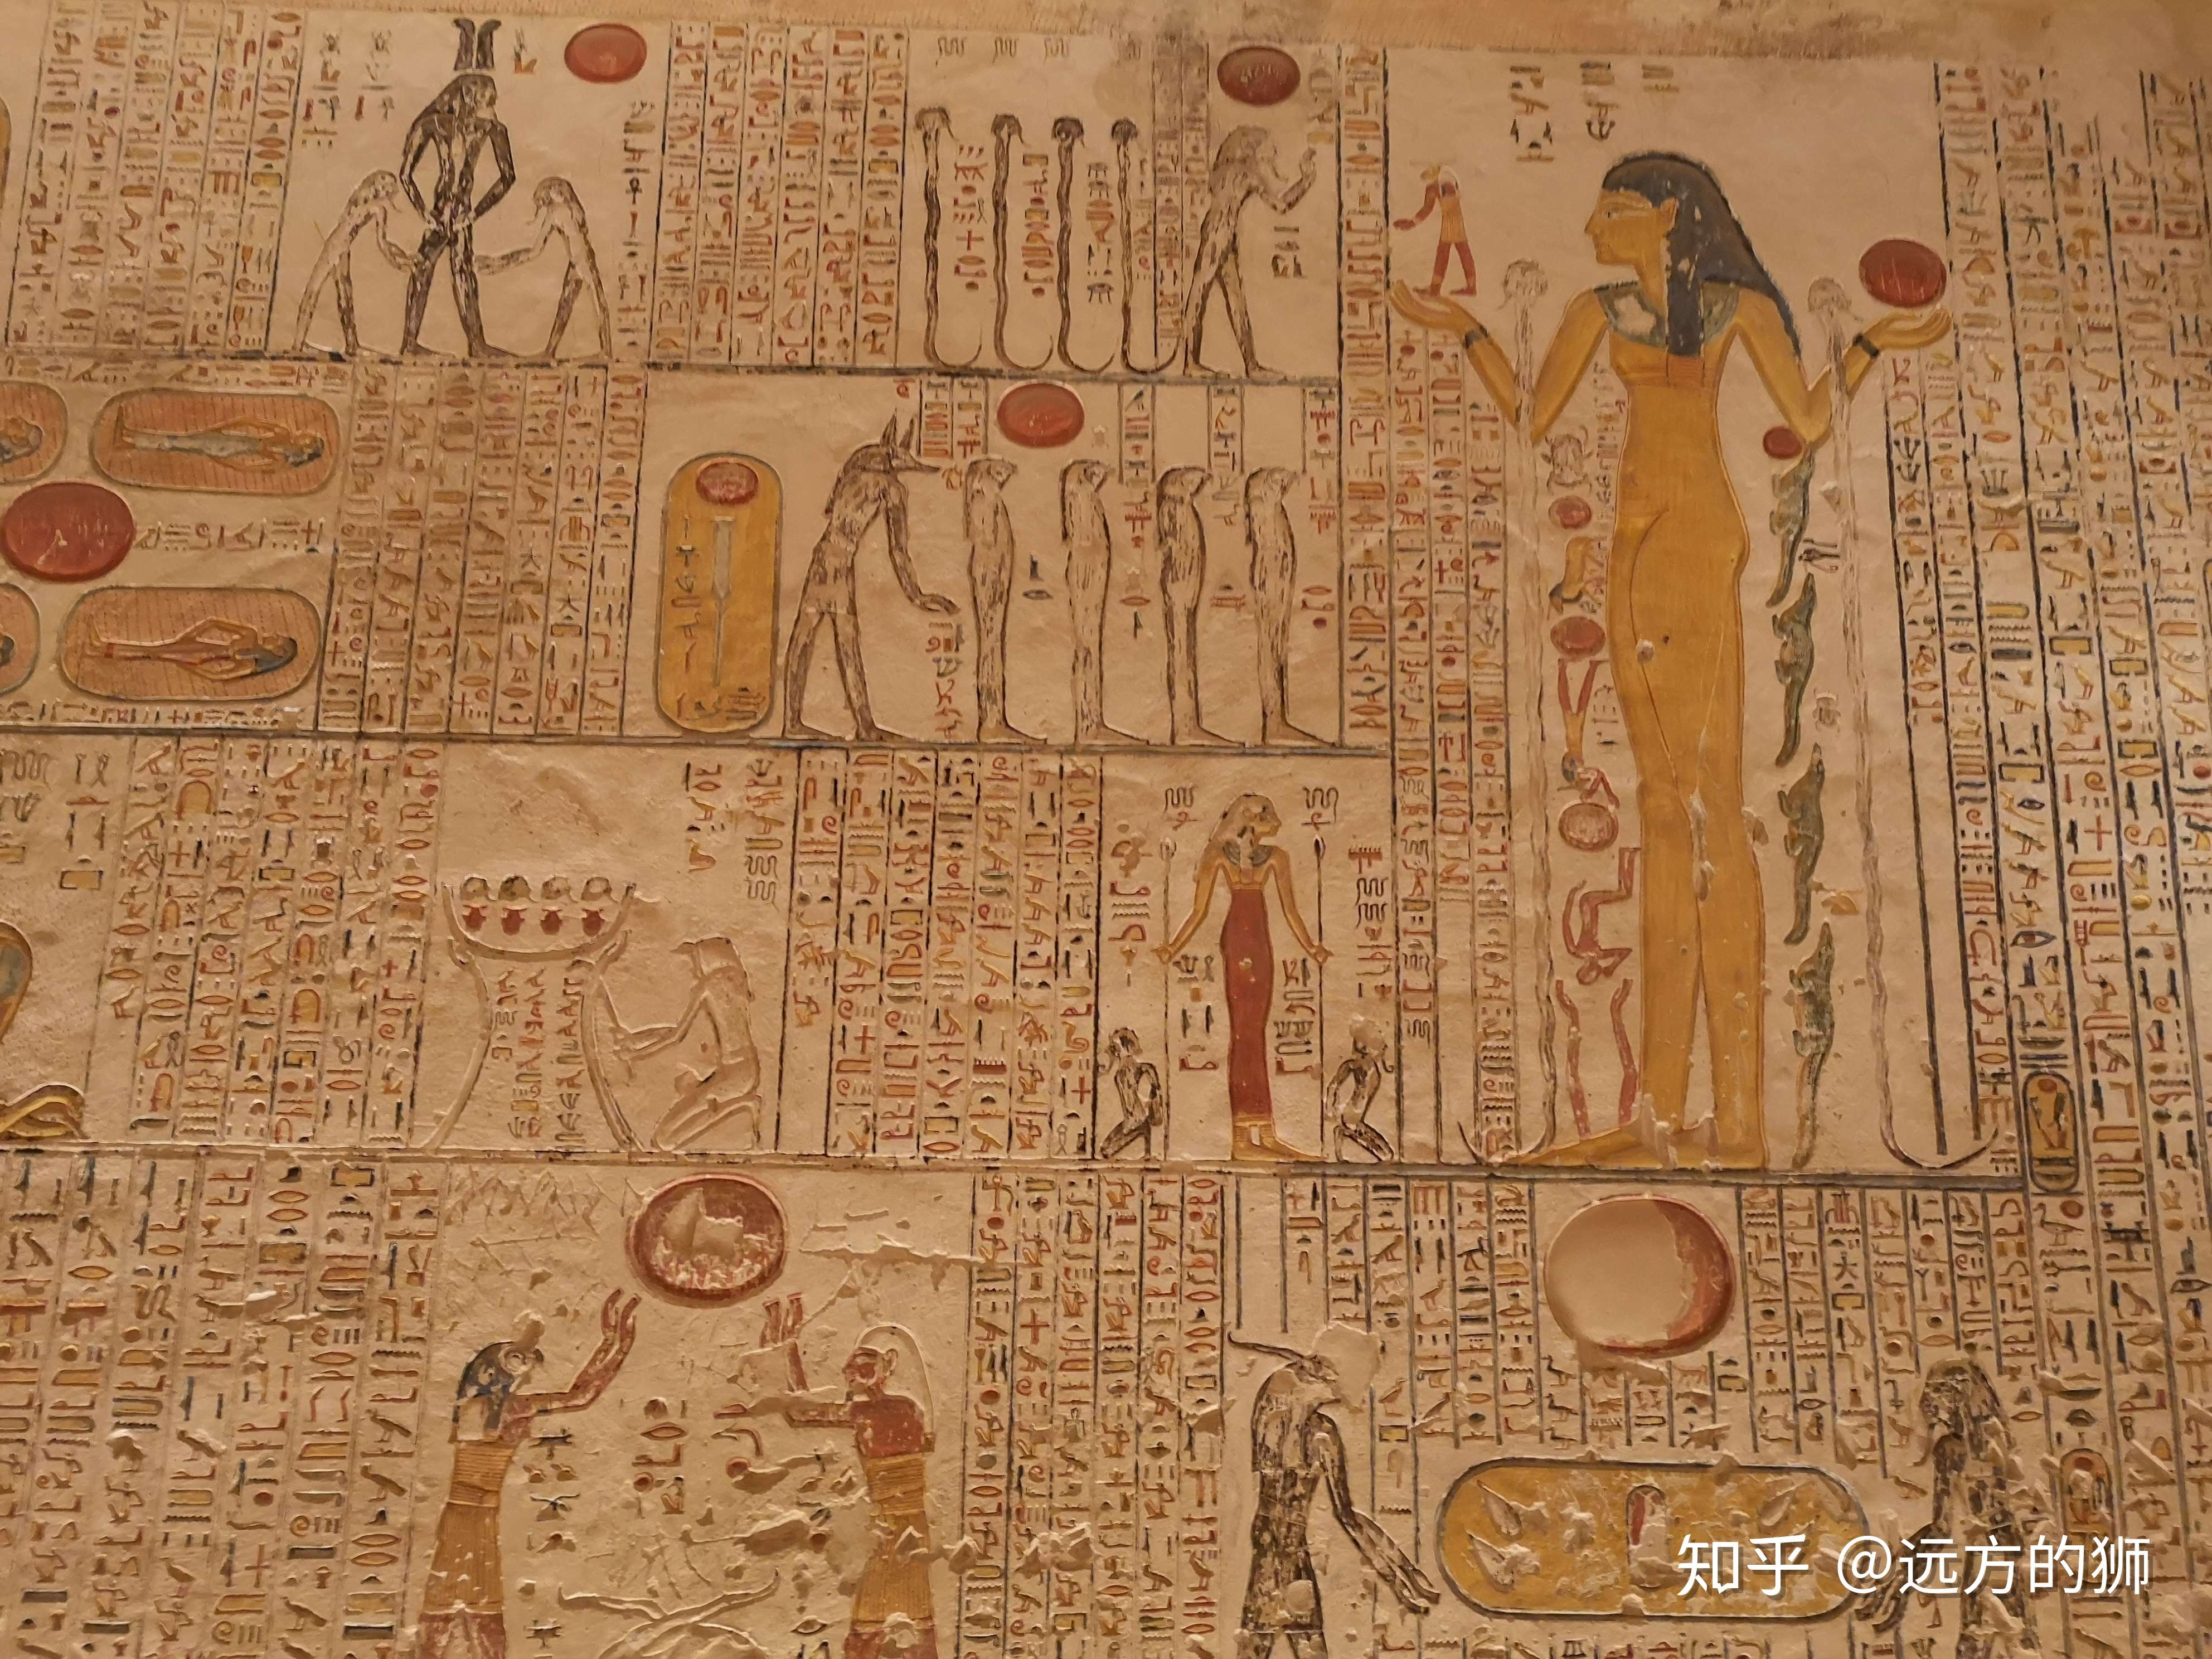 古埃及人刻的壁画很壮观,表示法老向神献供奉,得到神的护佑,或法老在